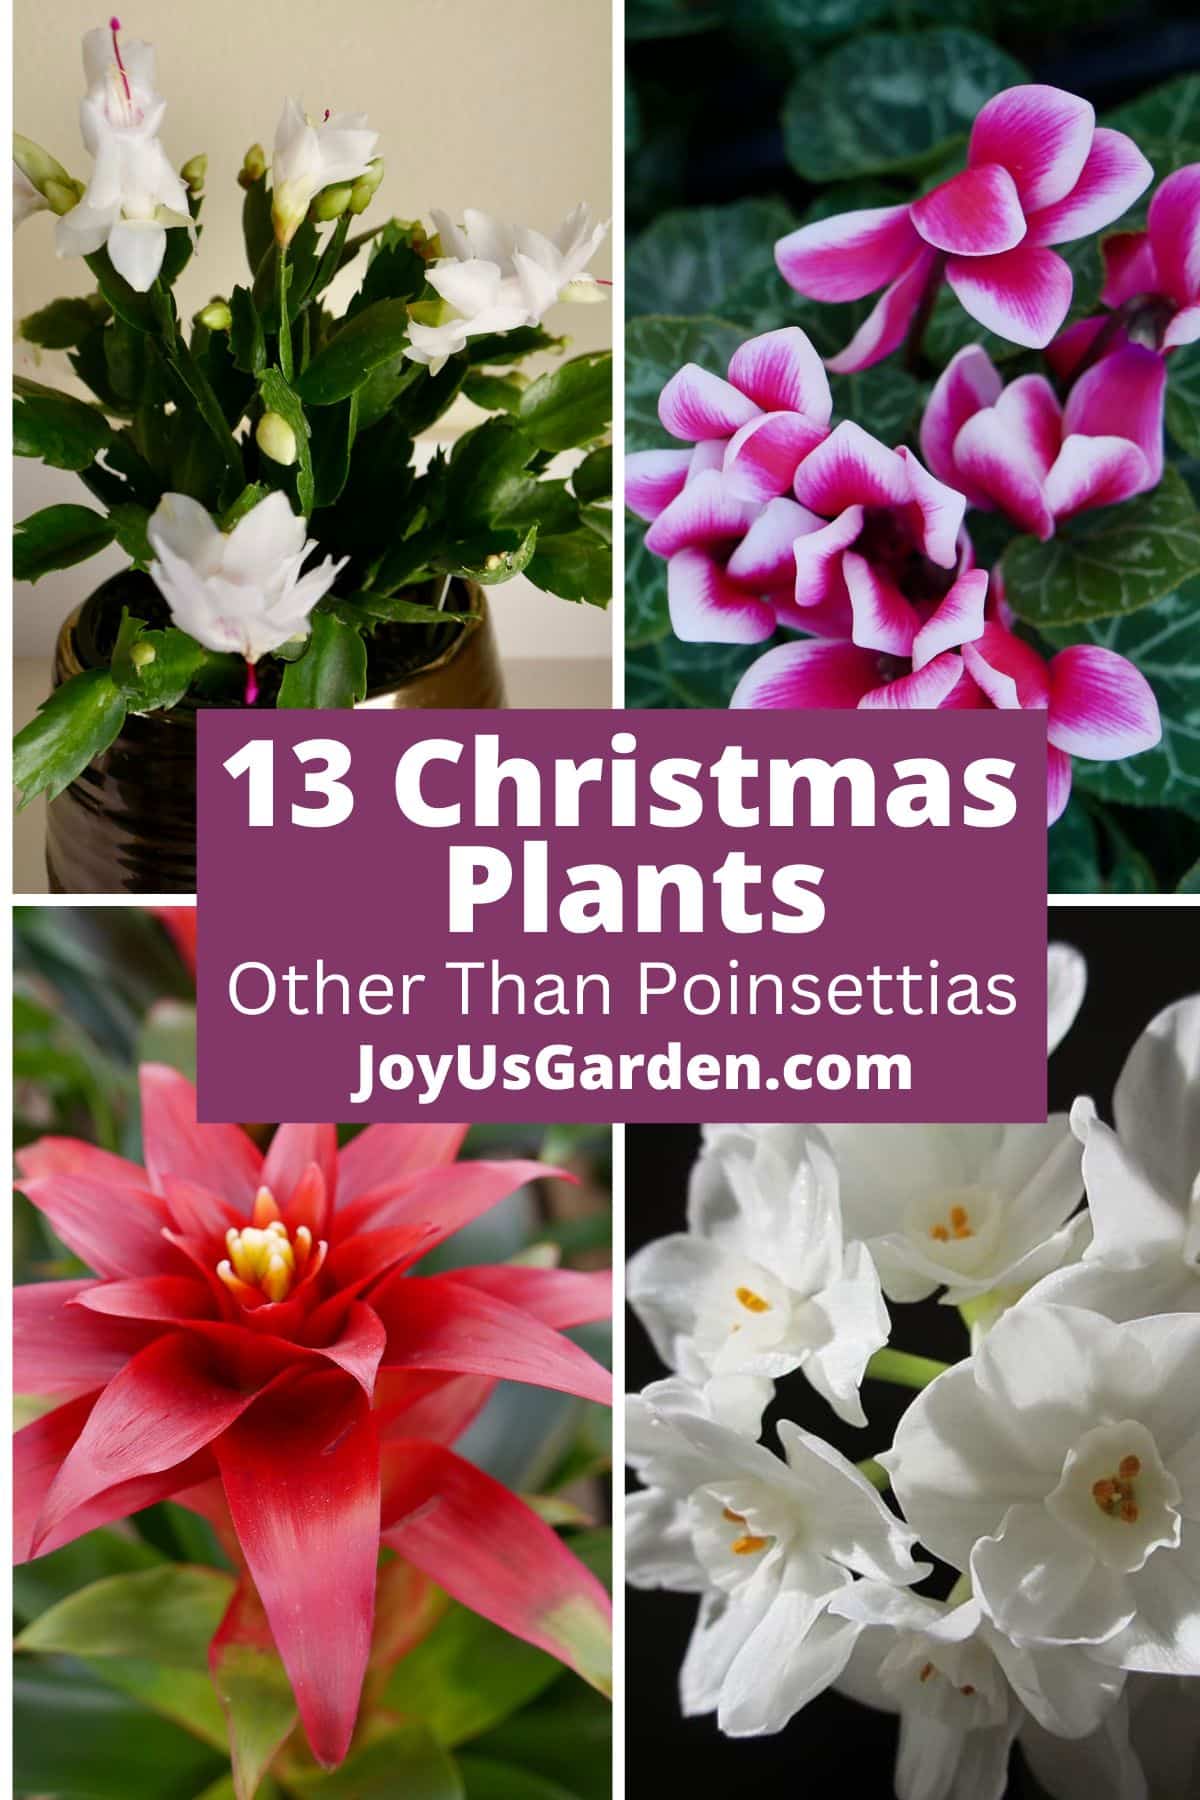  13 χριστουγεννιάτικα φυτά εκτός από τις Πουαρέττες